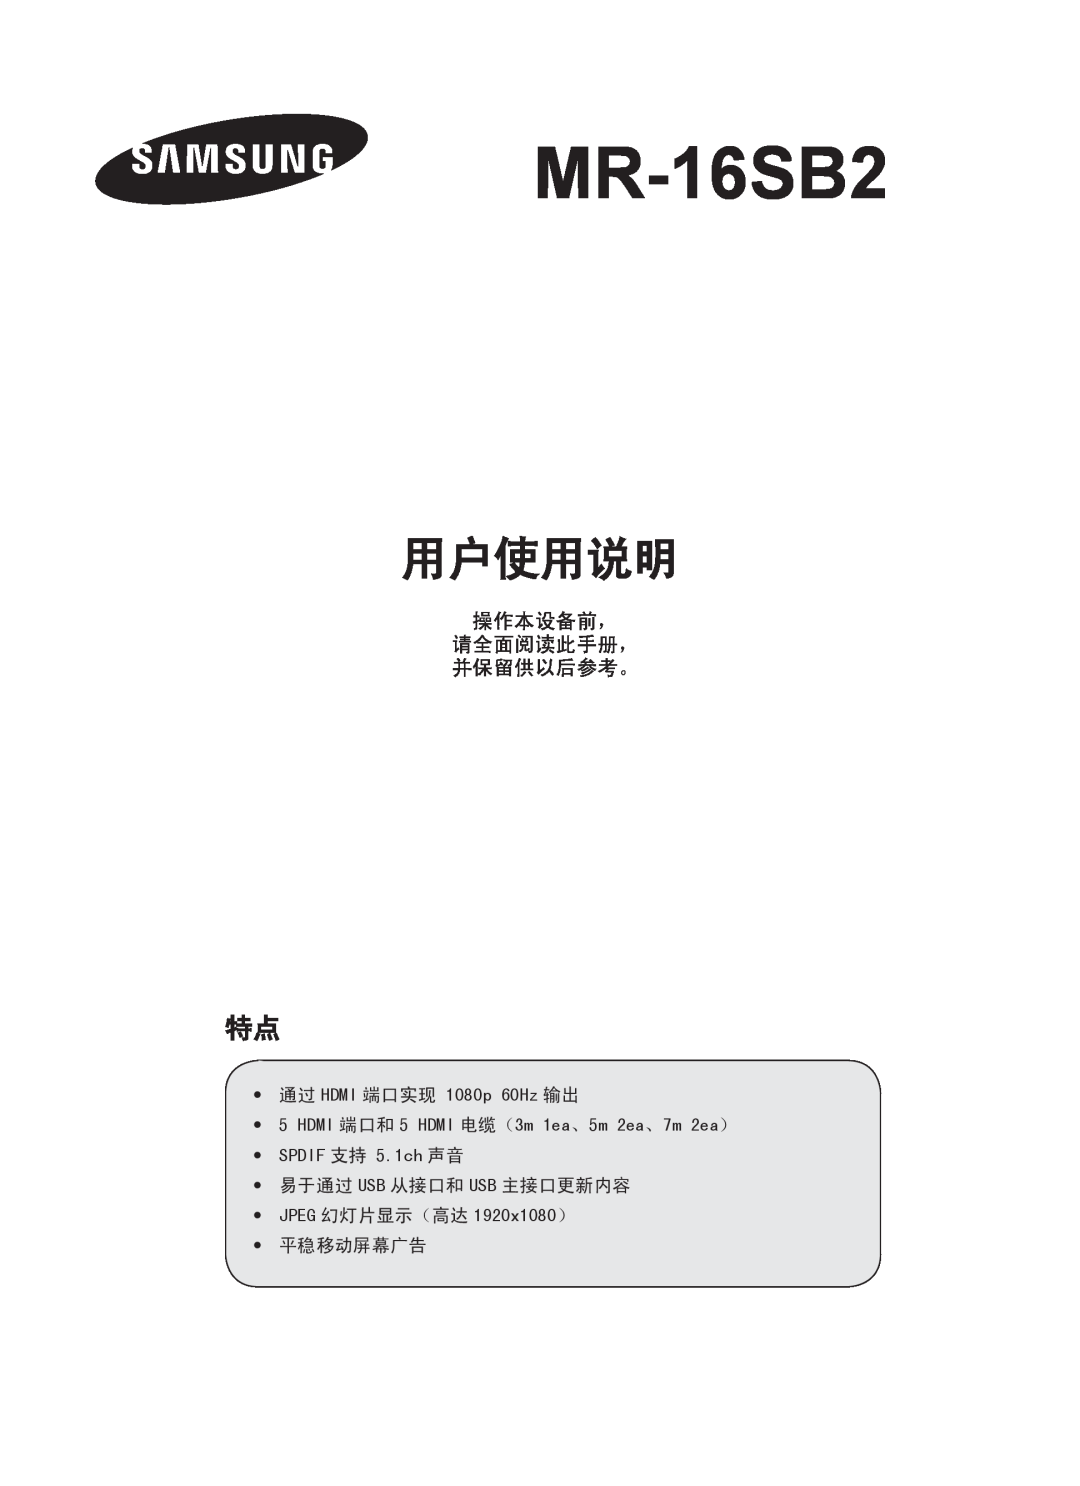 Samsung MR-16SB2 manual 用户使用说明, 操作本设备前， 请全面阅读此手册， 并保留供以后参考。 